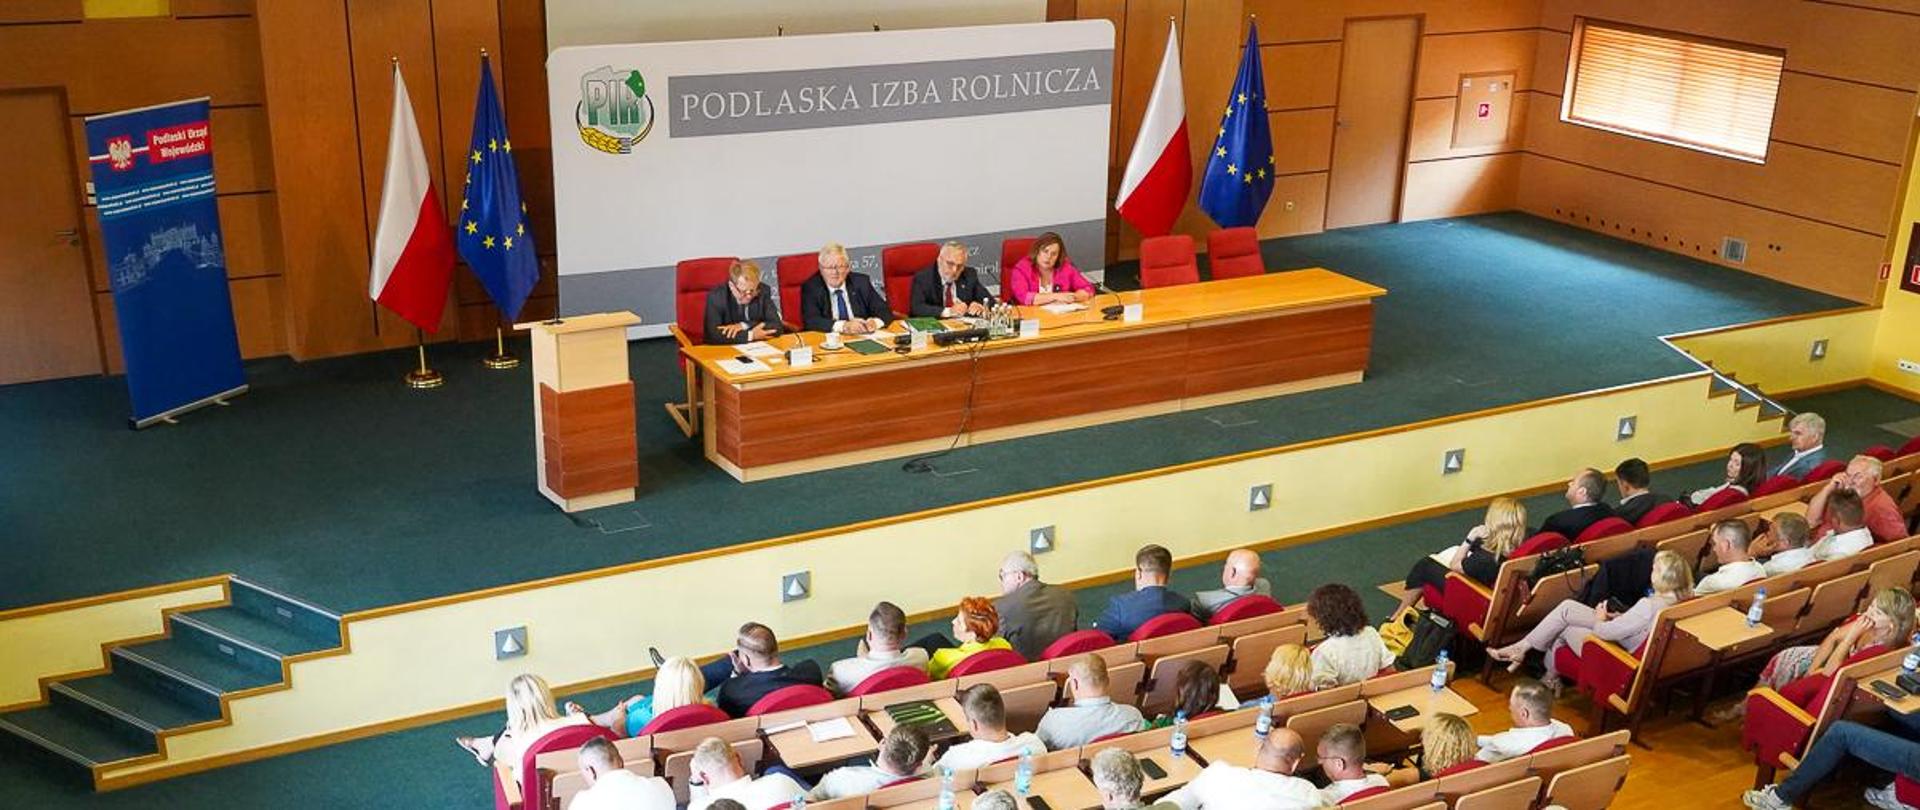 Spotkanie podlaskich Izb Rolniczych z ministrem Czesławem Siekierskim (fot. MRiRW)